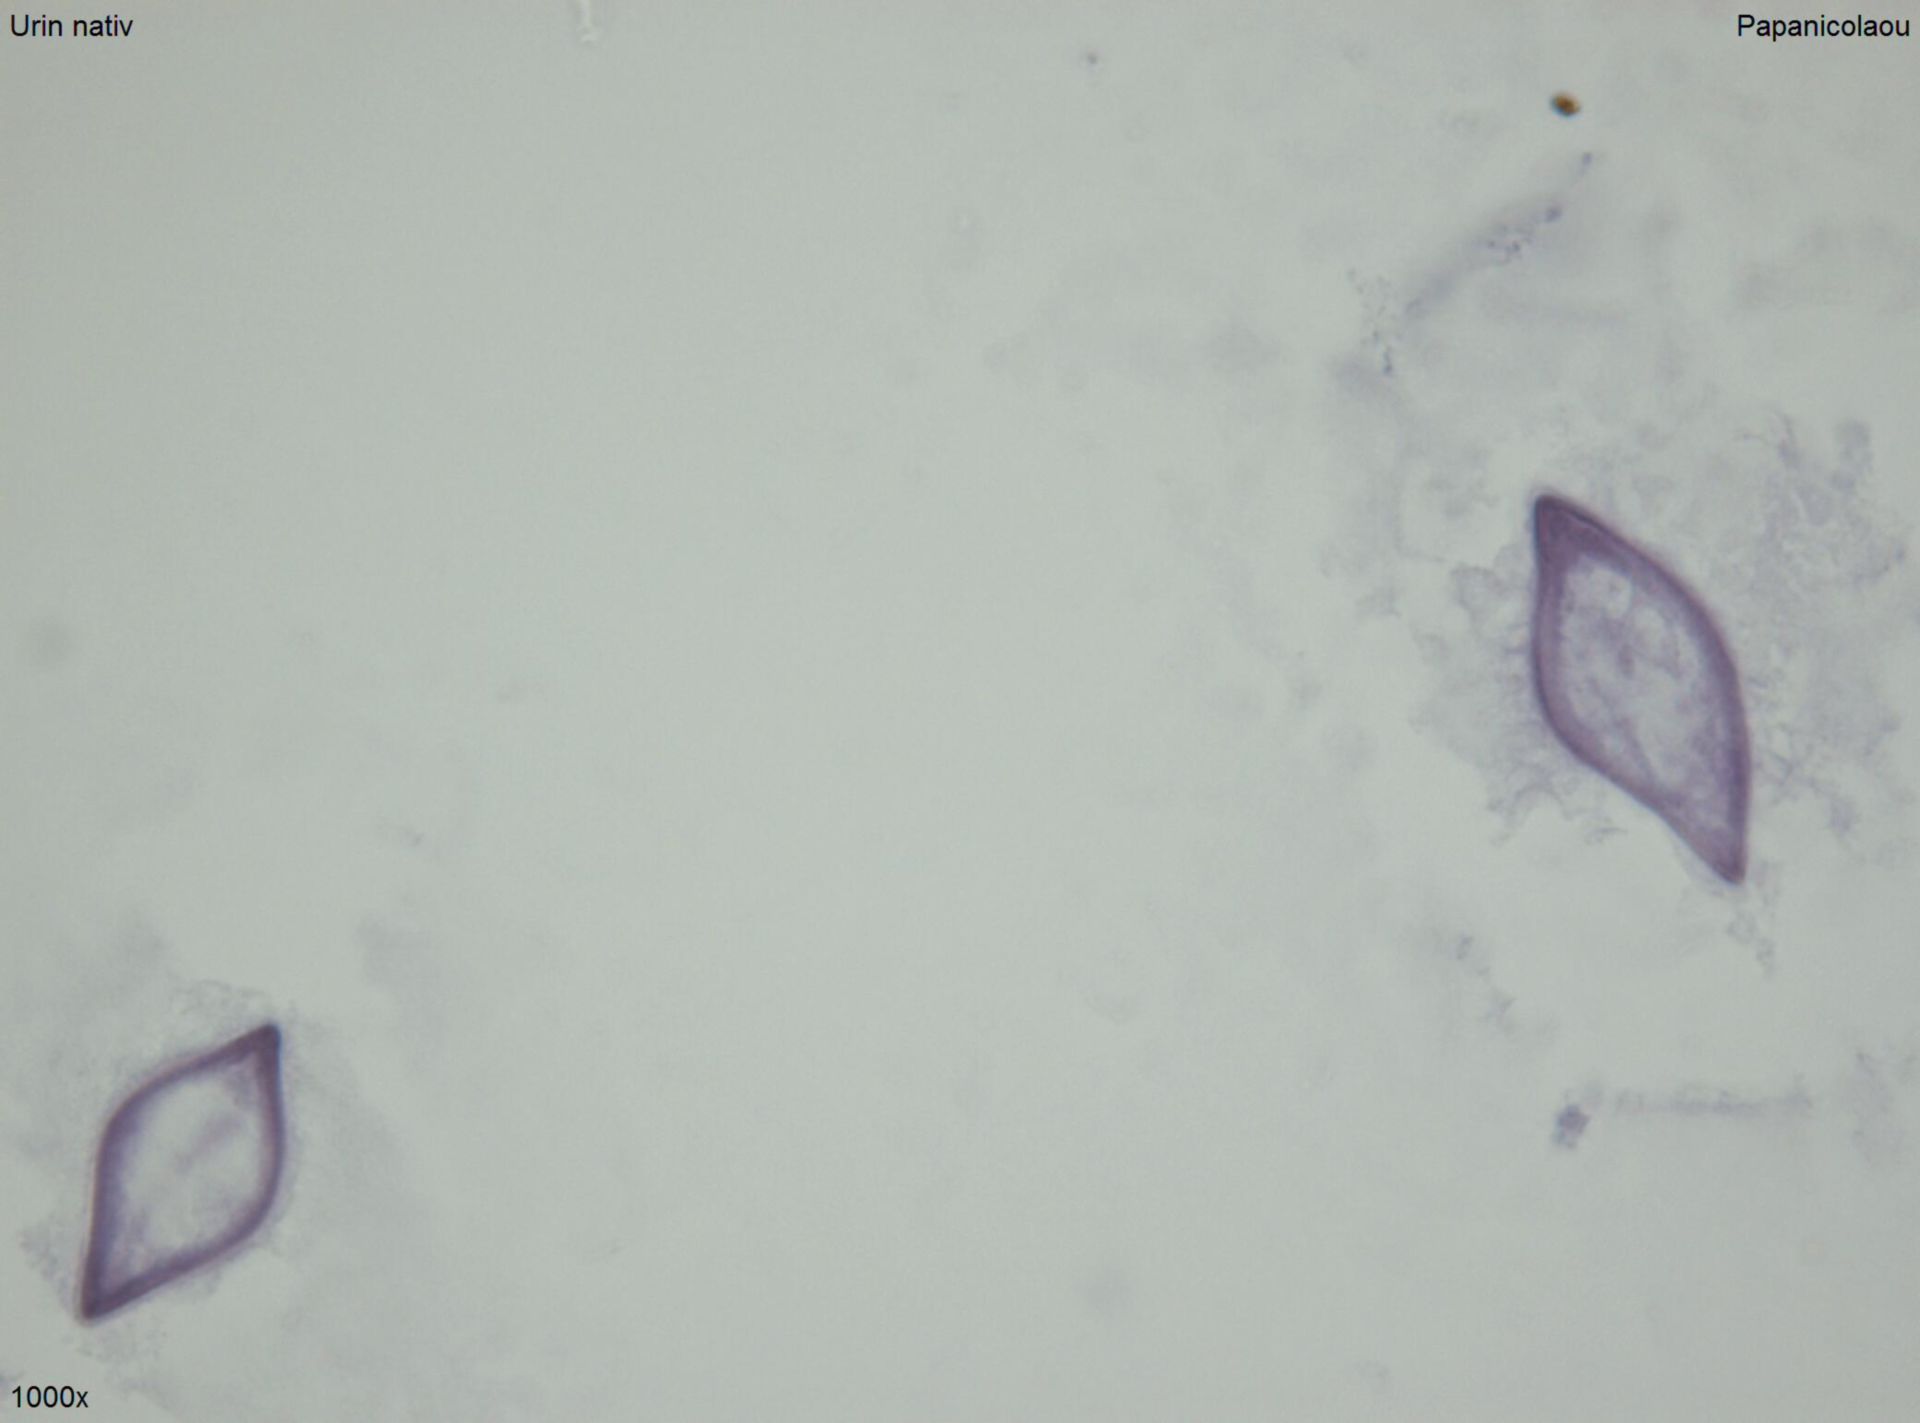 Schistosomeneier oder Pollen 4